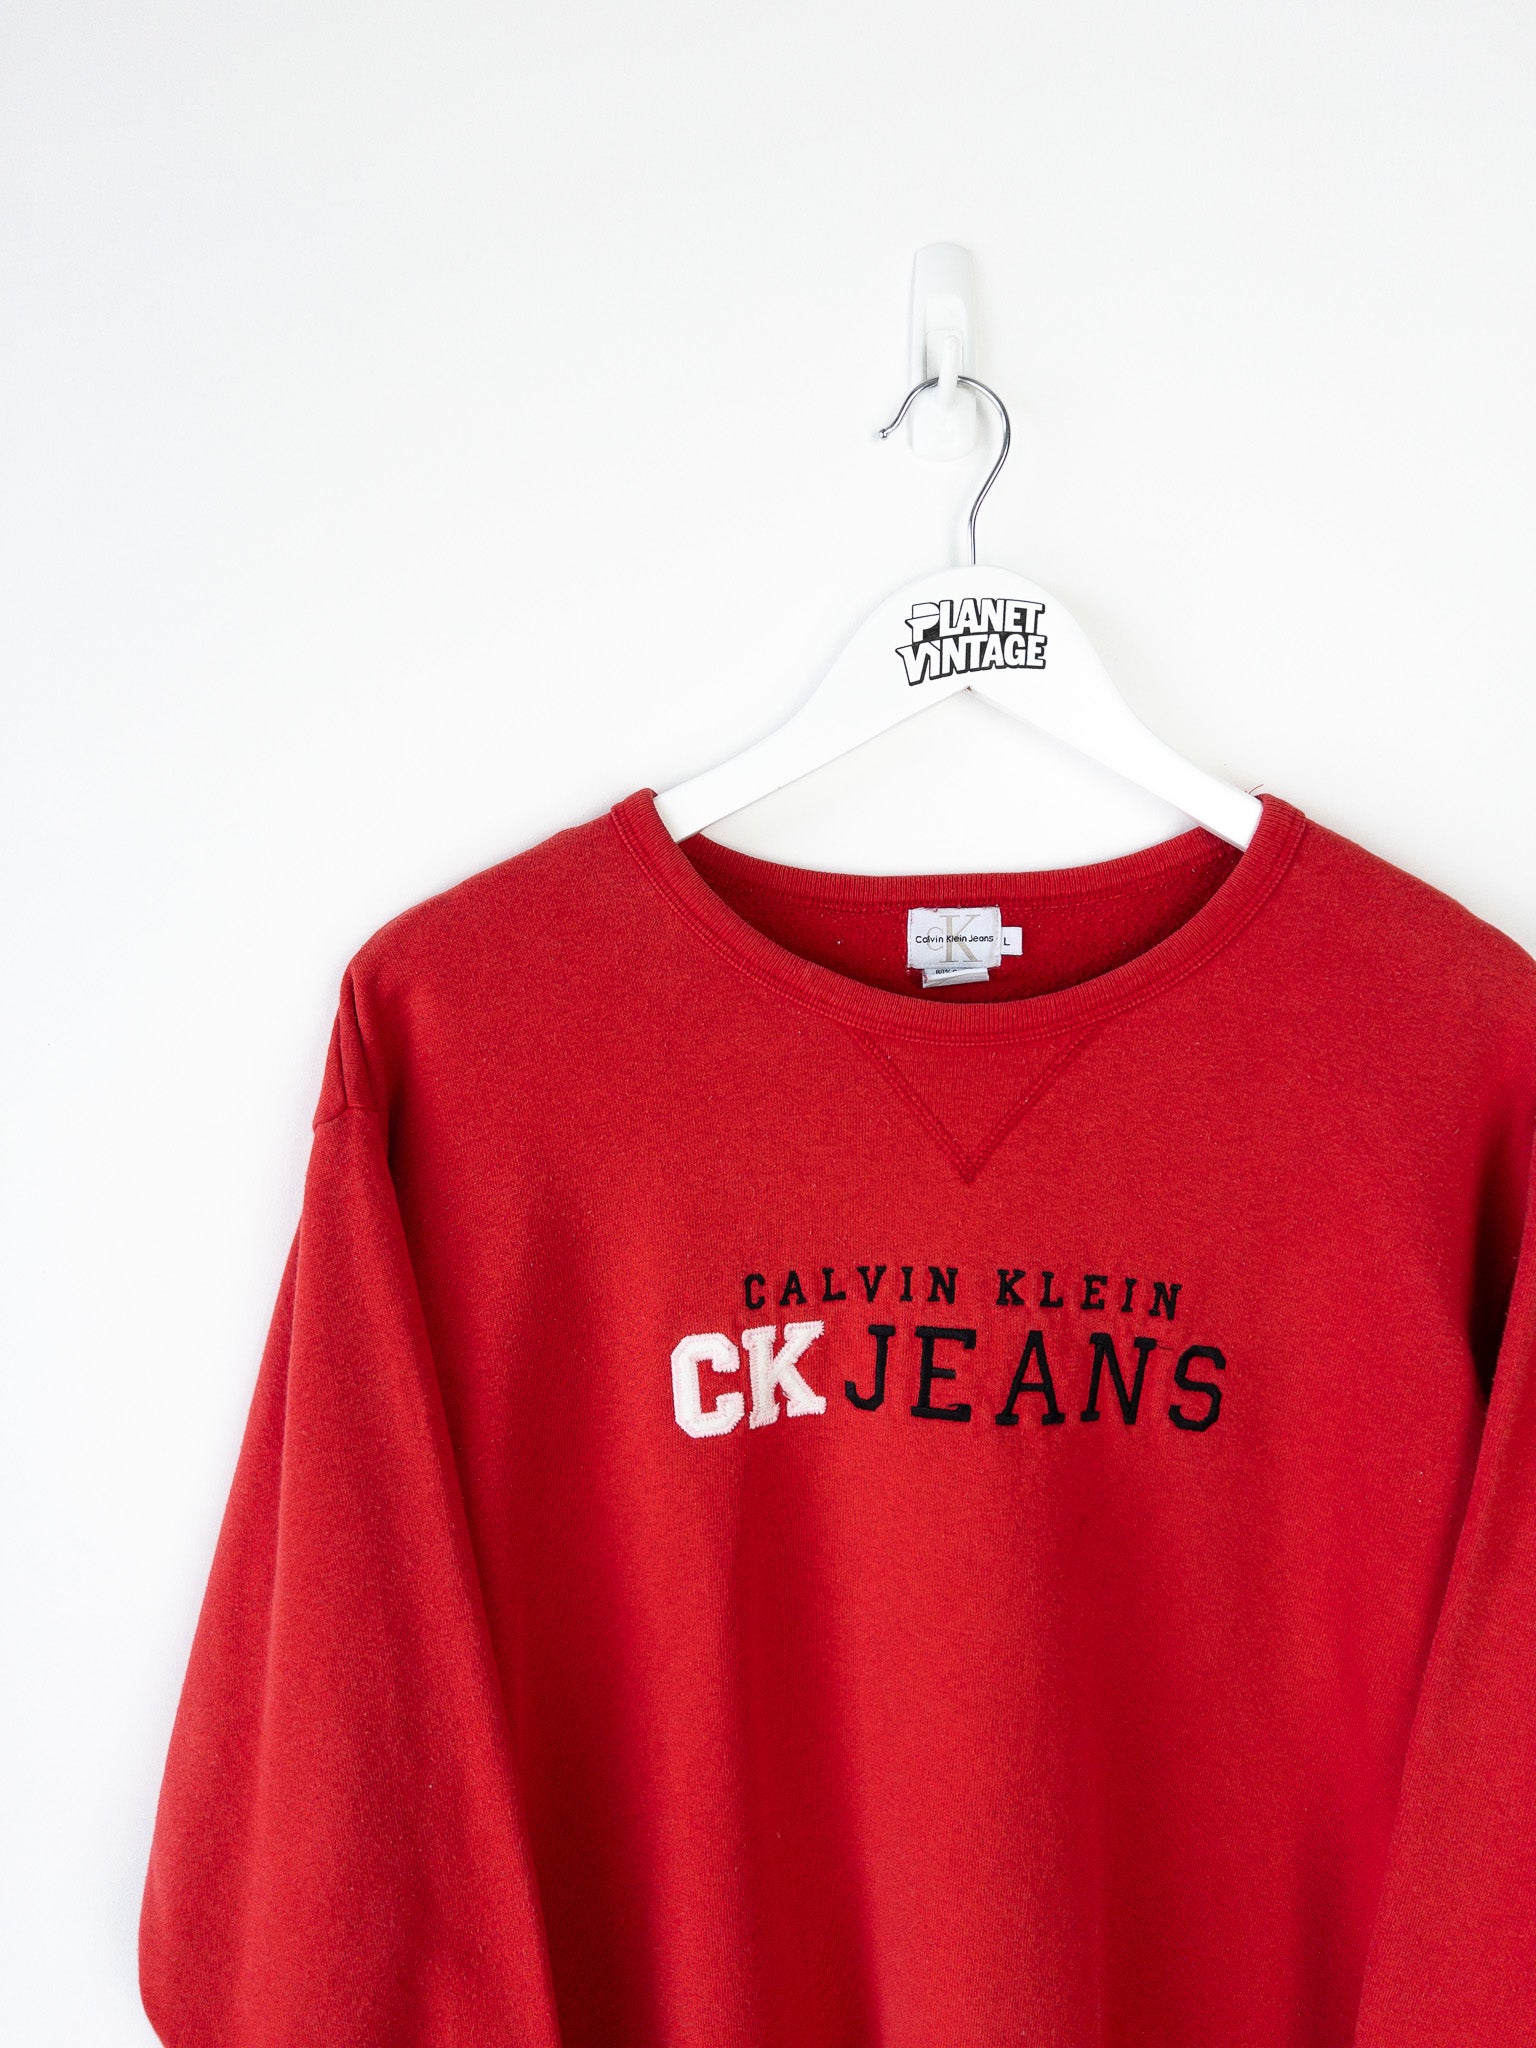 Vintage Calvin Klein Sweatshirt (M)